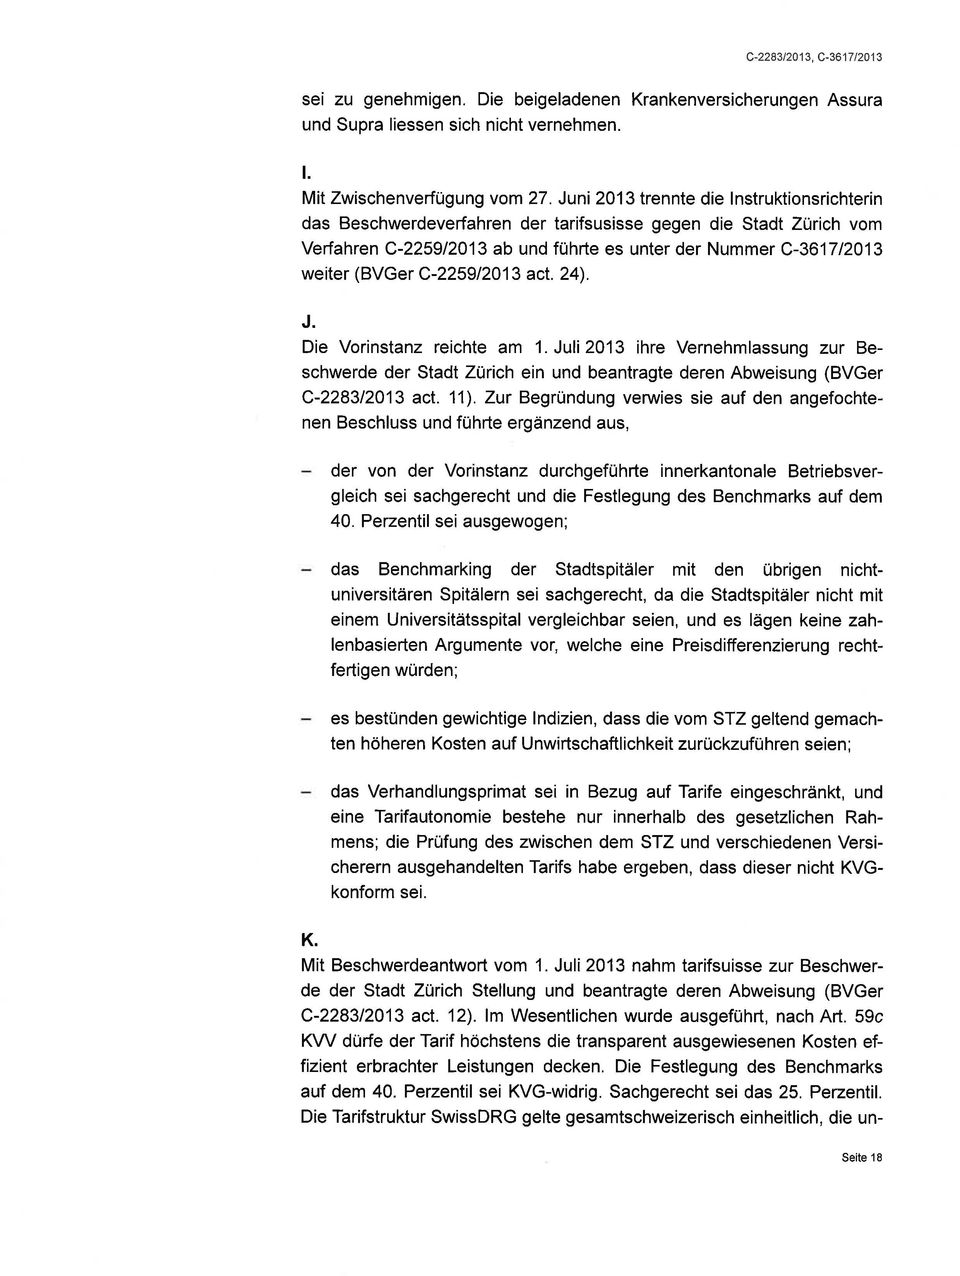 C-225912013 acl. 24). J. Die Vorinstanz reichte am 1. Juli 2013 ihre Vernehmlassung zur Beschwerde der Stadt Zürich ein und beantragte deren Abweisung (BVGer C-228312013 act. 11).